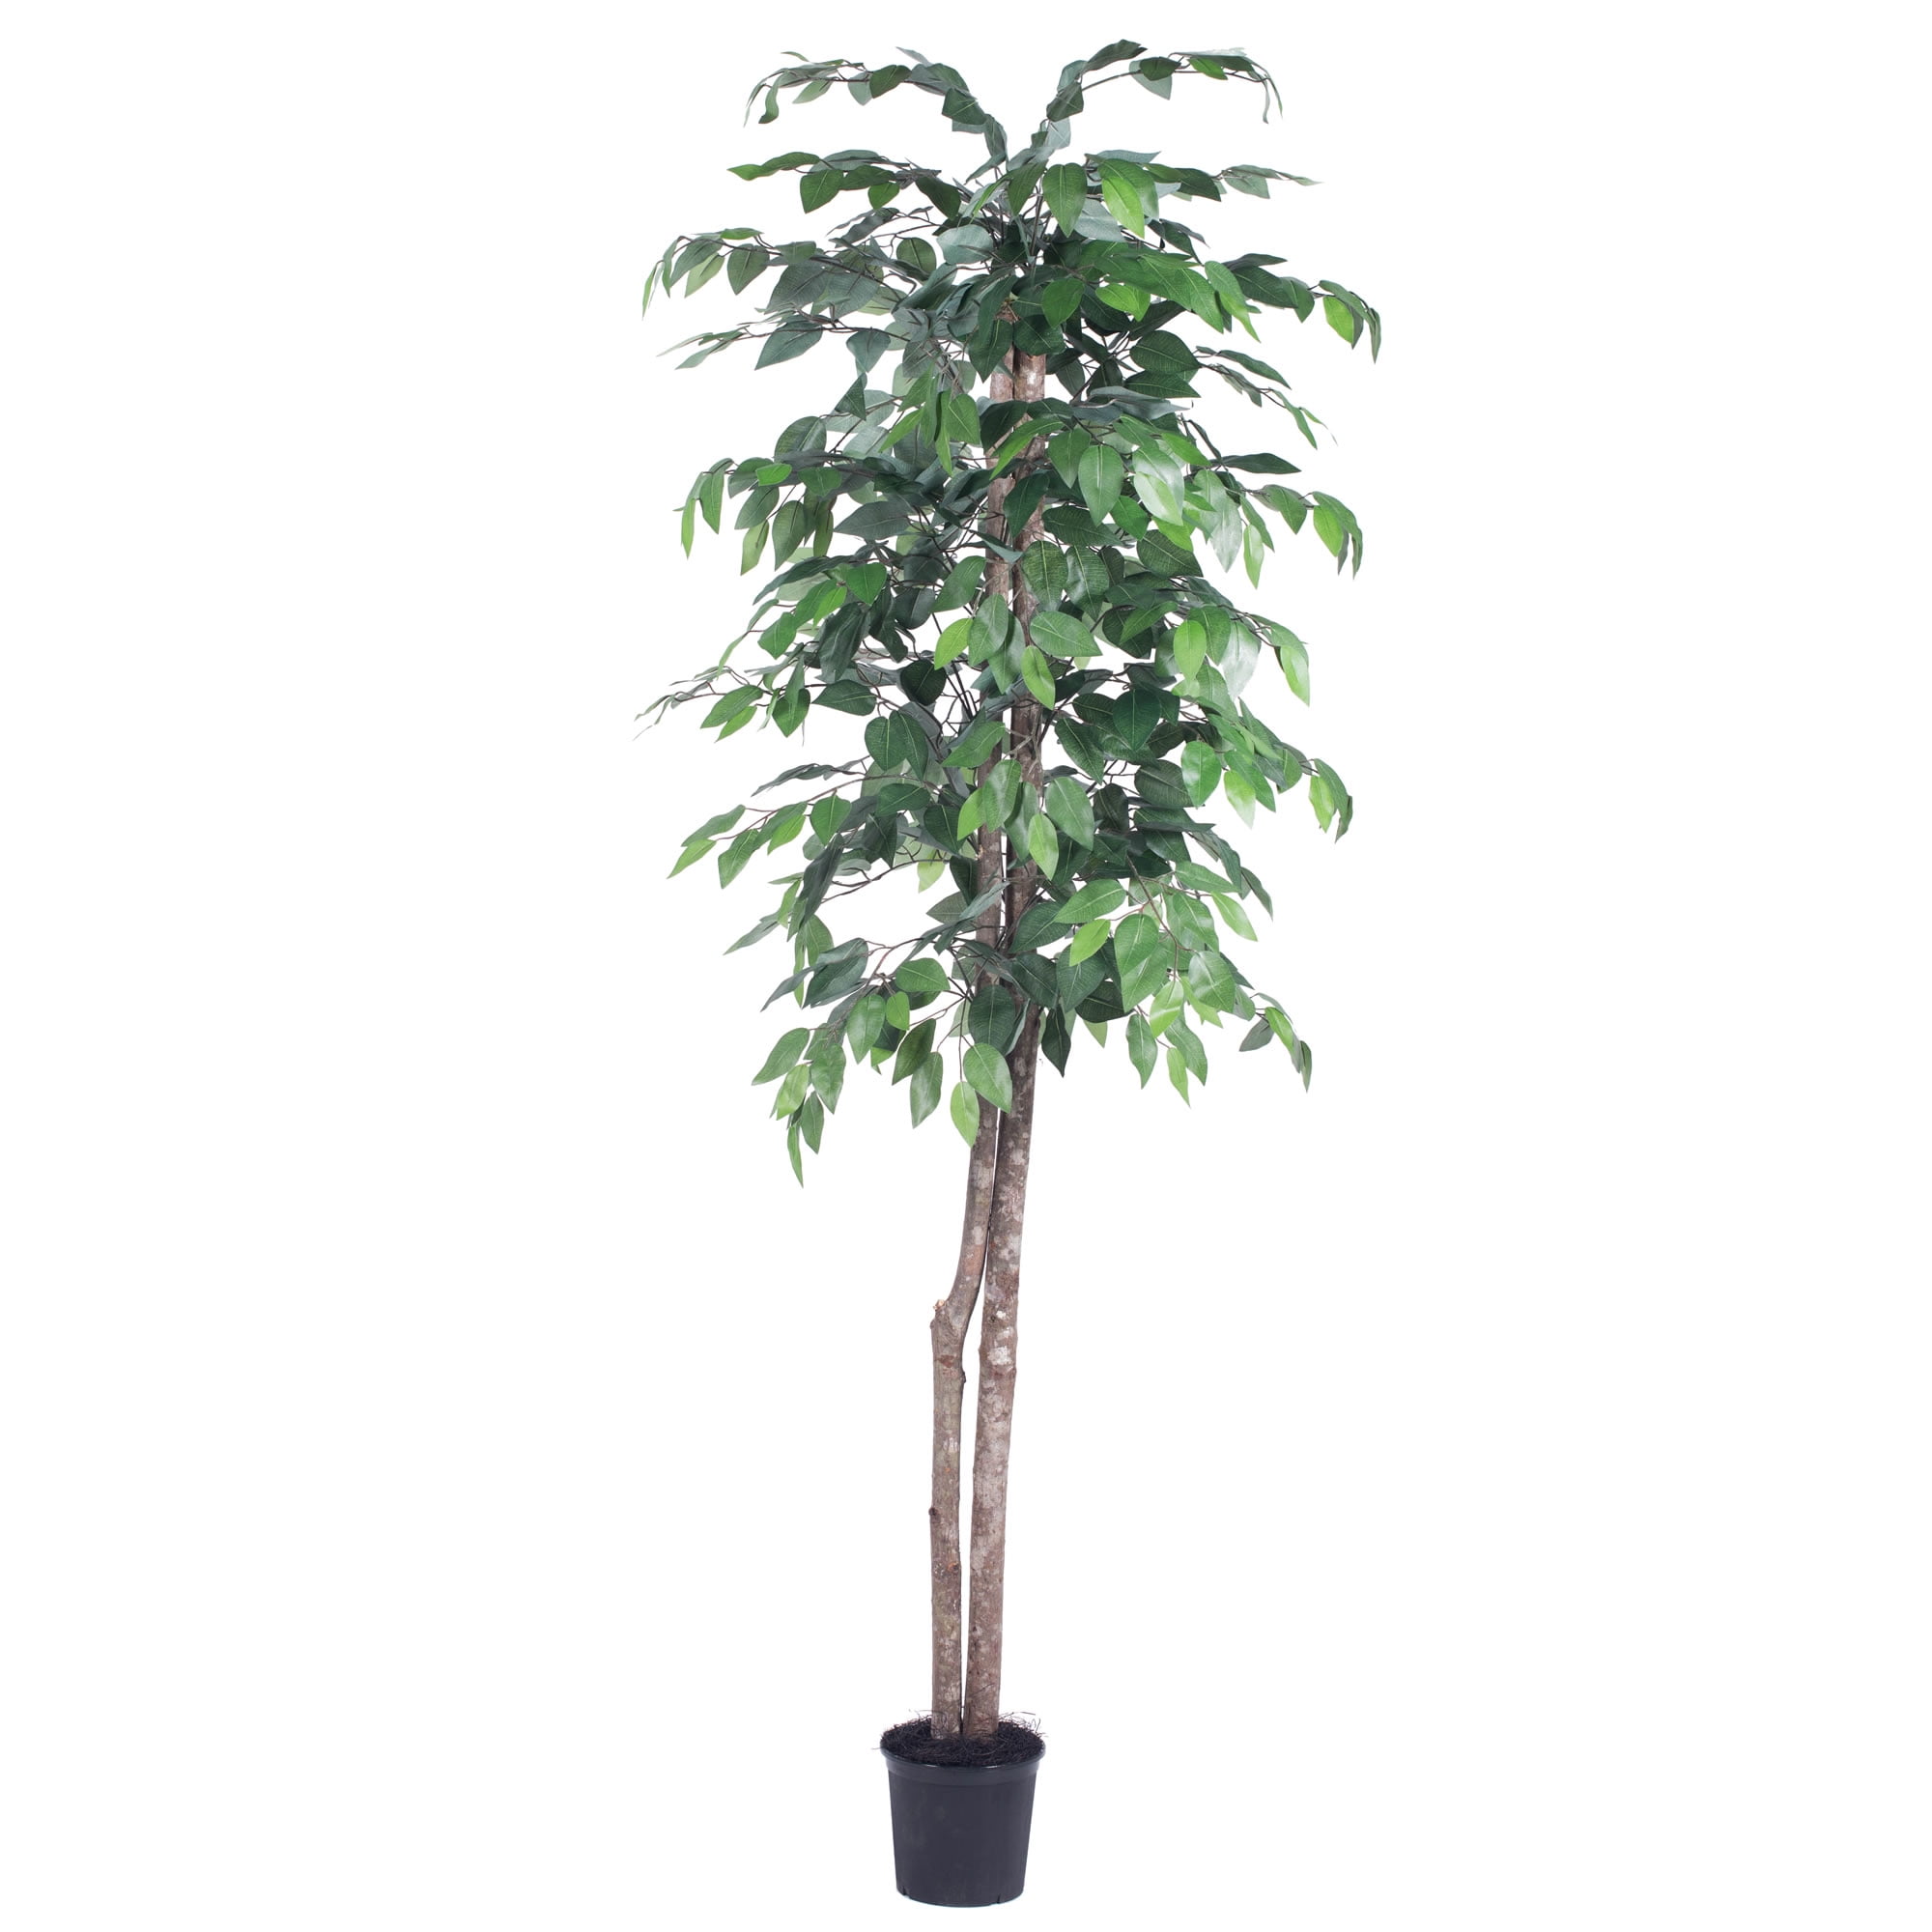 Vickerman 6' Artificial Ficus Tree in Black Pot - Walmart.com - Walmart.com